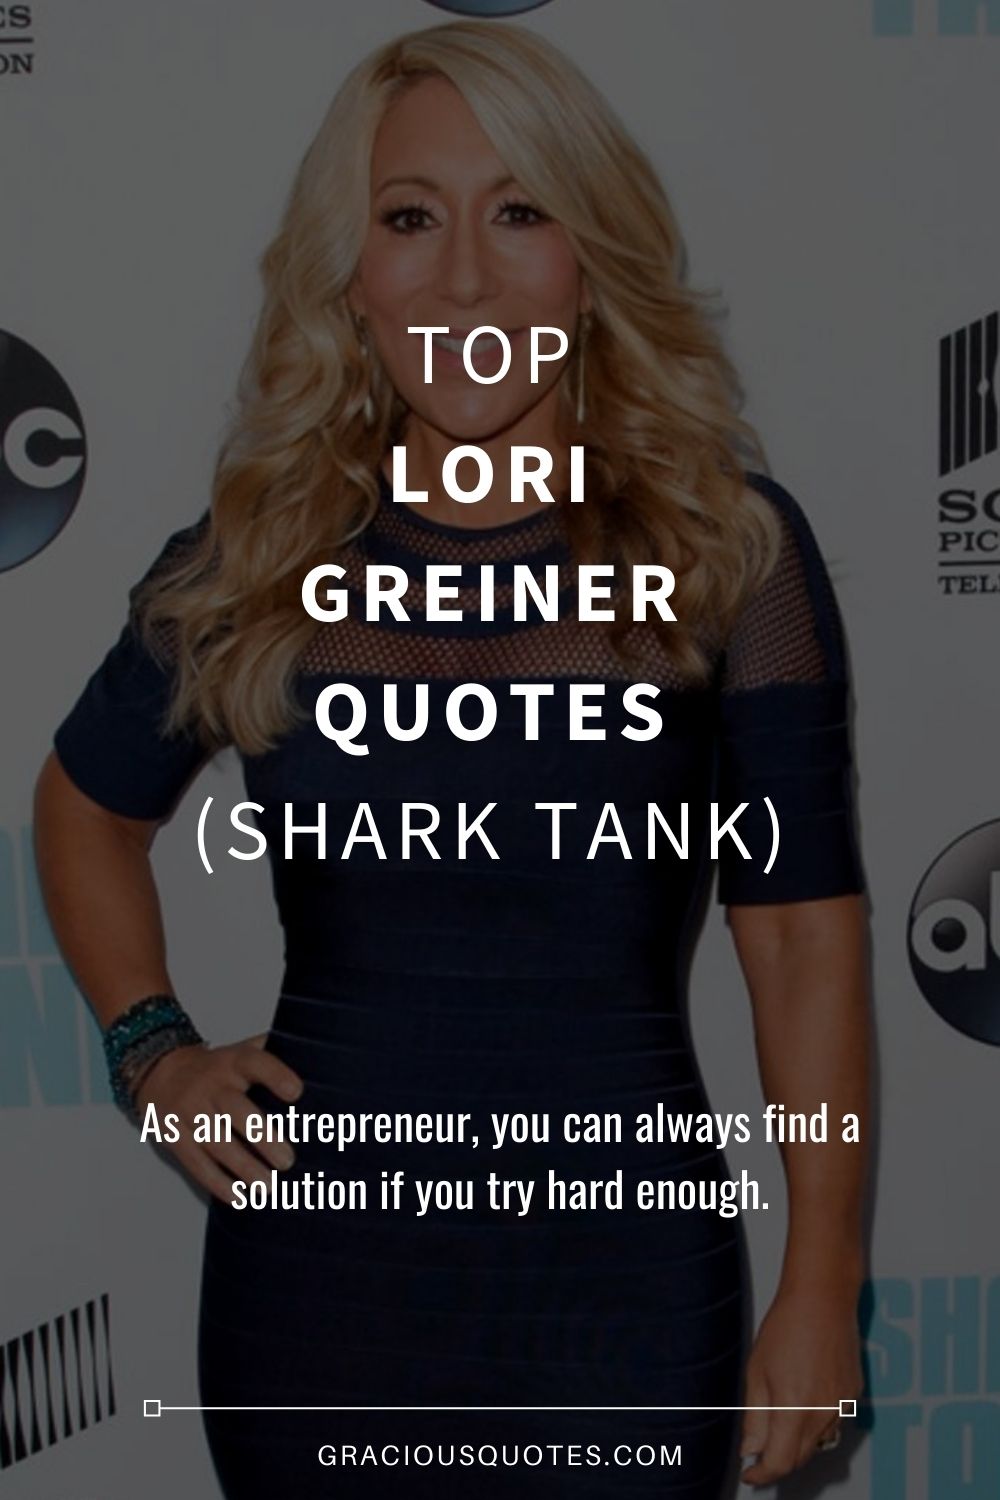 Top Lori Greiner Quotes (SHARK TANK) - Gracious Quotes